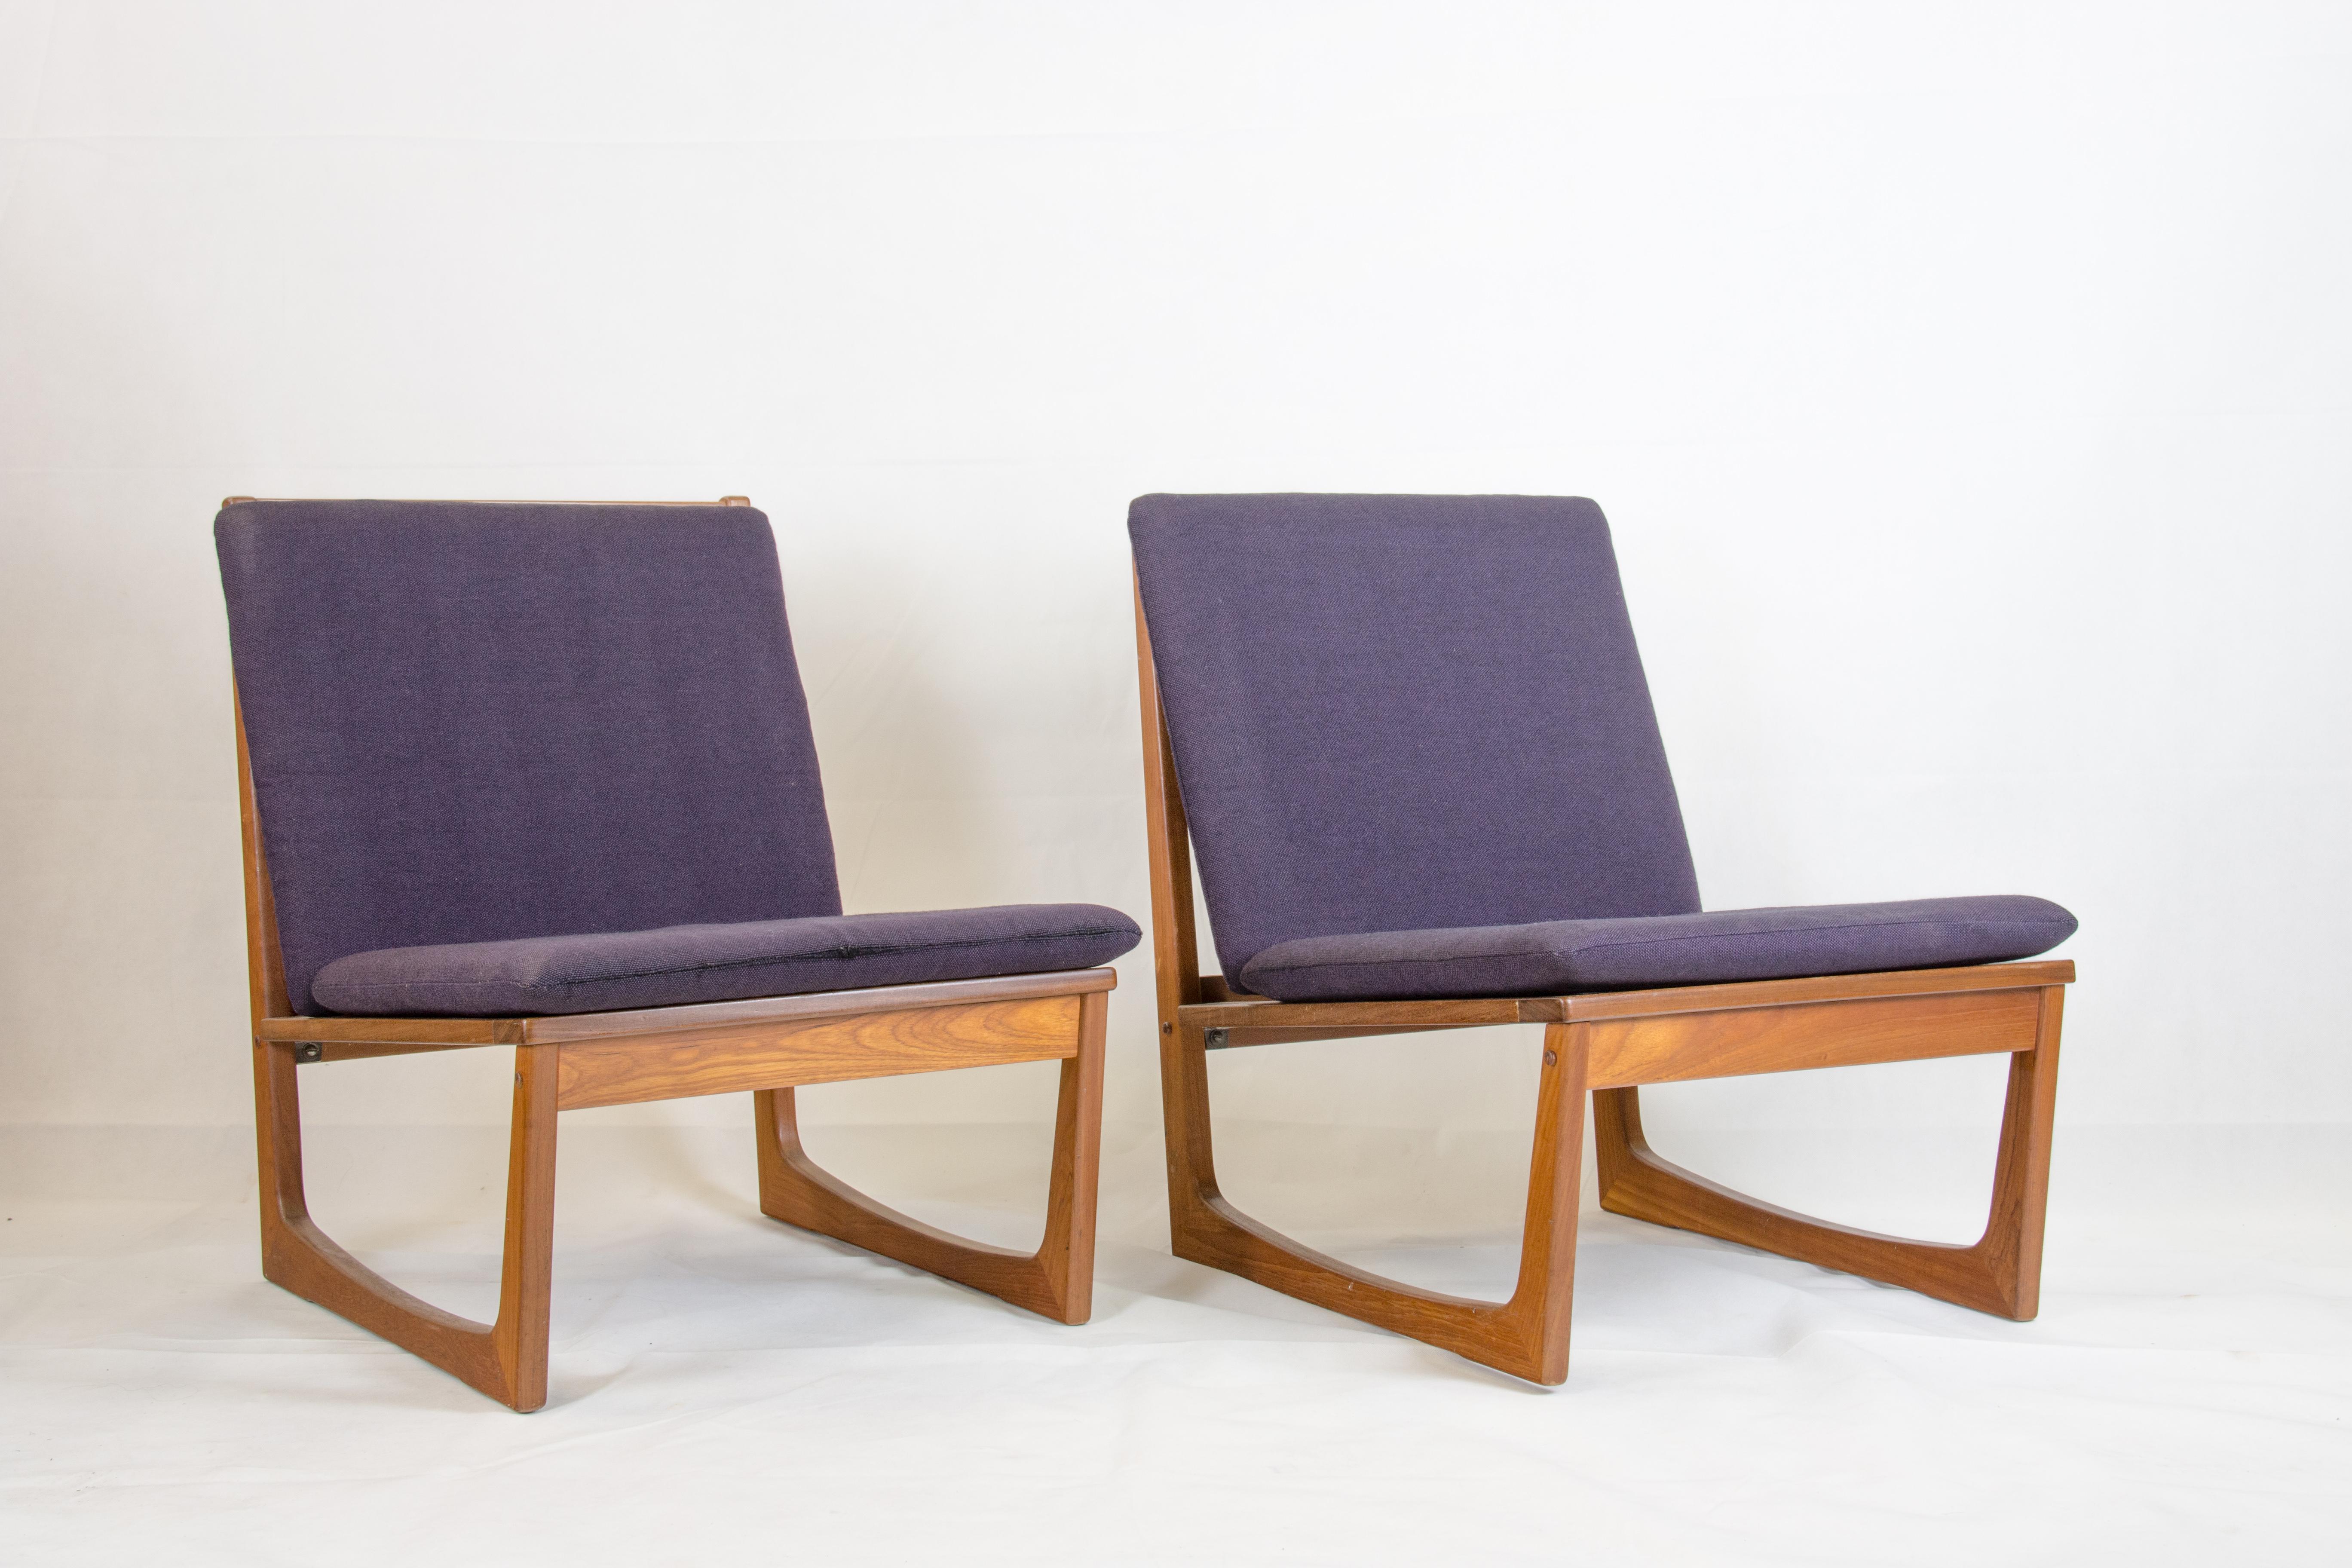 Paire de fauteuils en teck conçus par Hans Olsen
et fabriqué par Brdr. Juul Kristensen
coussins originaux en laine violette, probablement de Kvadrat